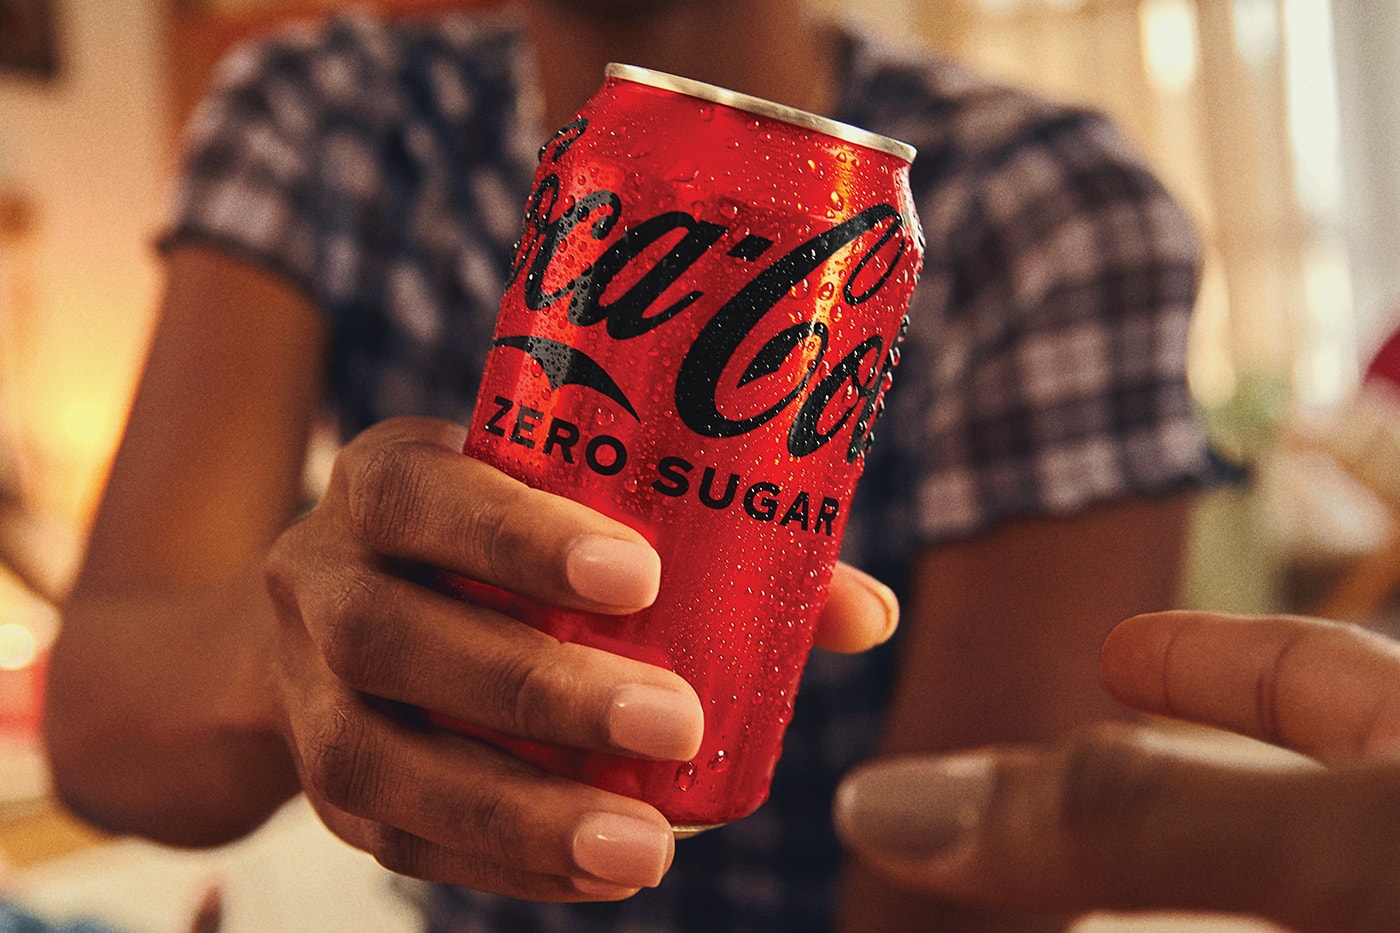 Coca-Cola 官方宣佈 Zero Sugar 風味重新調整配方和包裝